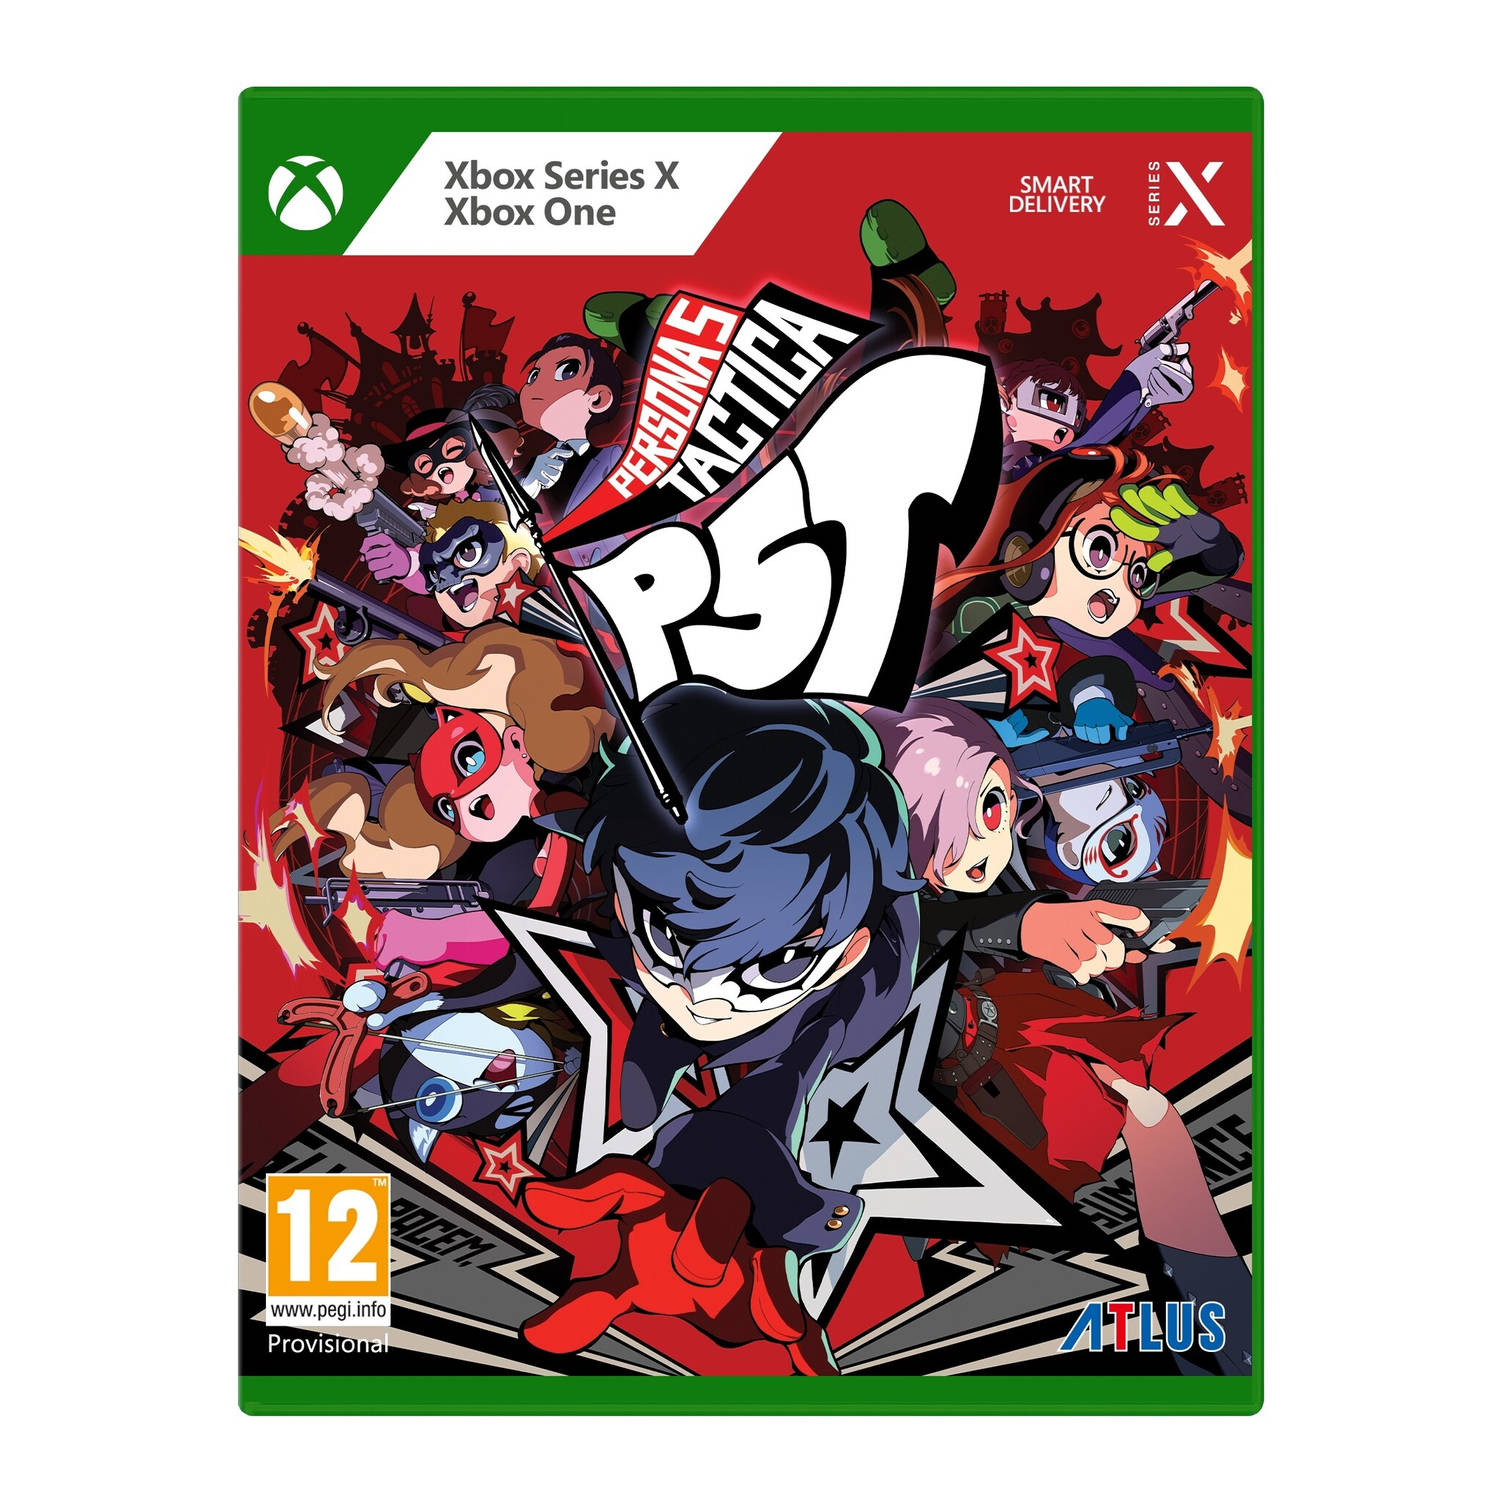 Persona 5 Tactica + Pre-order Bonus Xbox One & Series X